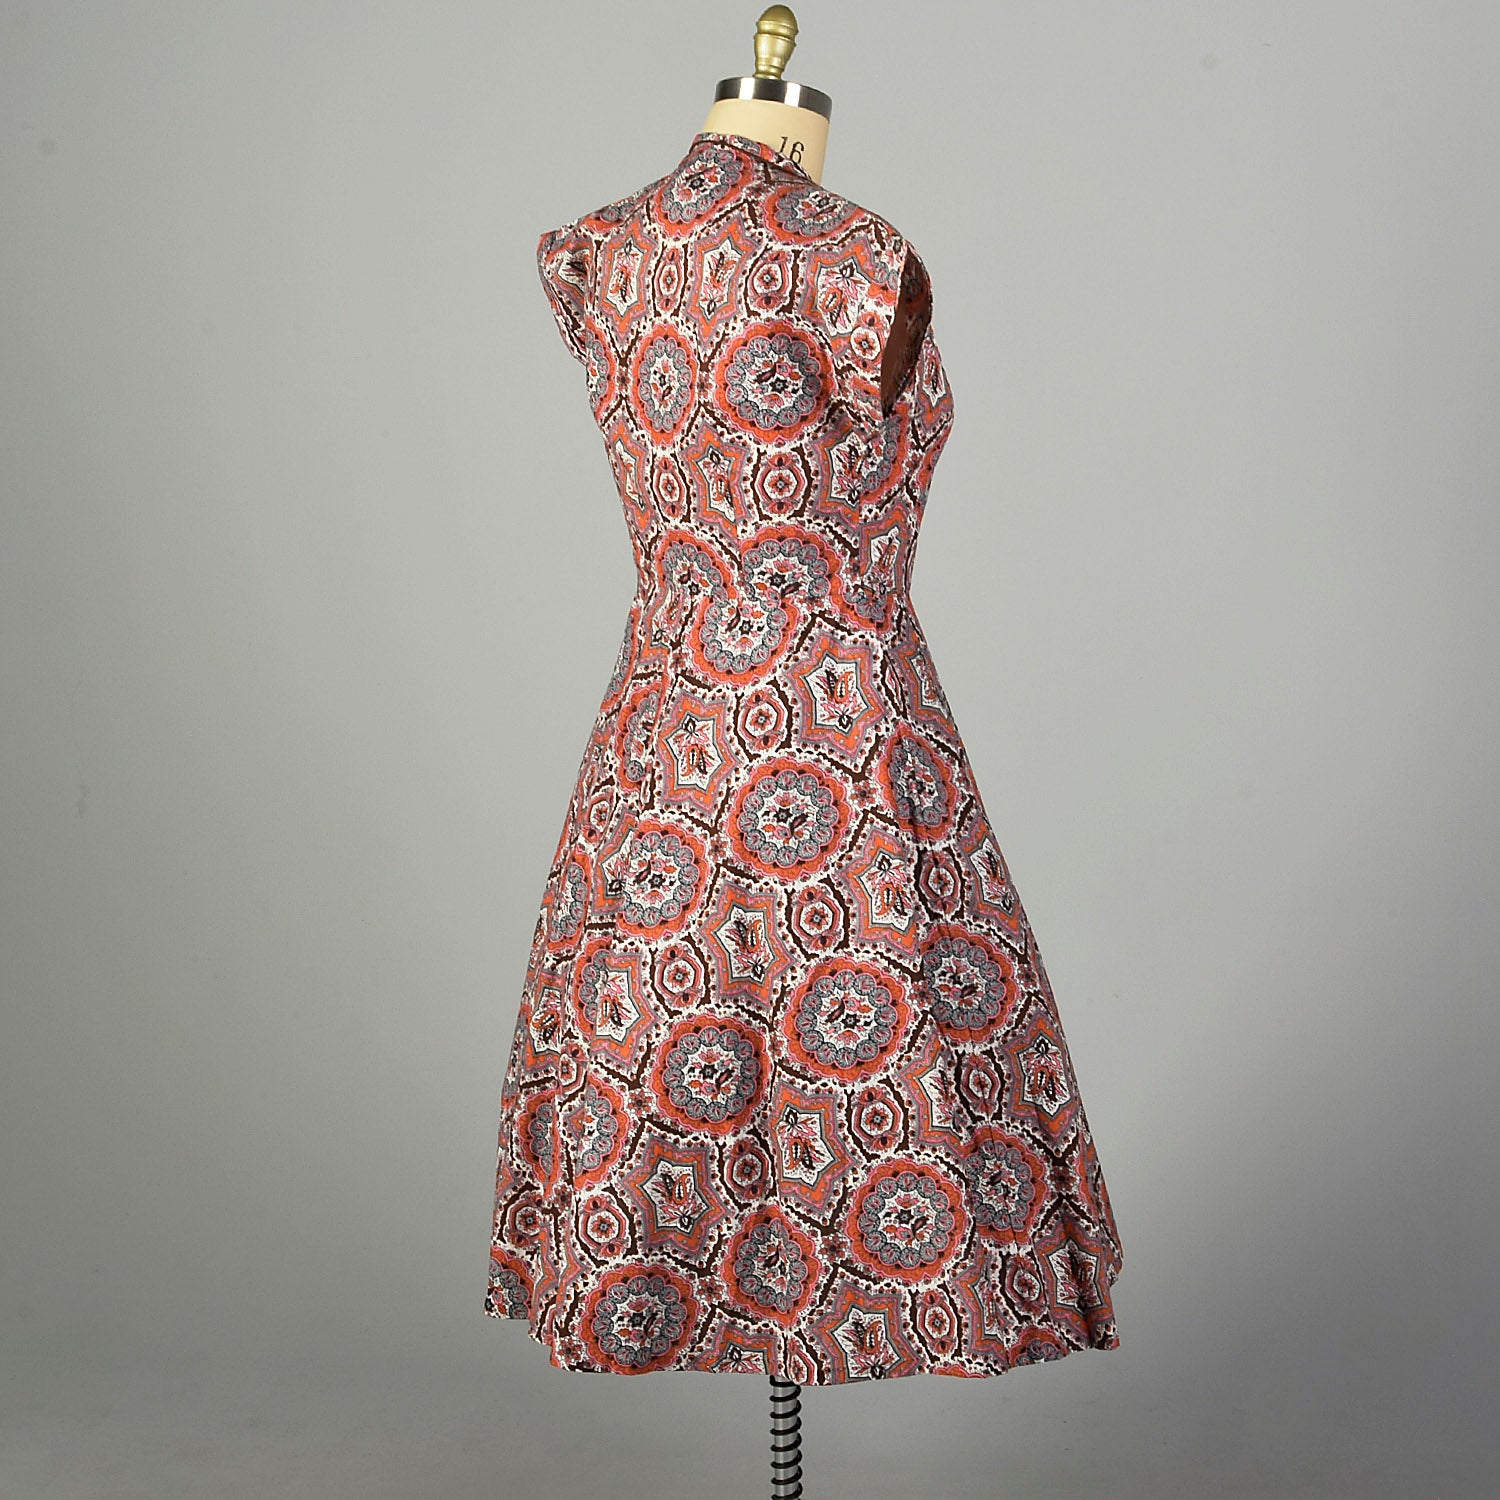 XL 1950s Day Dress Cotton Short Sleeve Volup Bohemian Print Casual Summer Shirtwaist